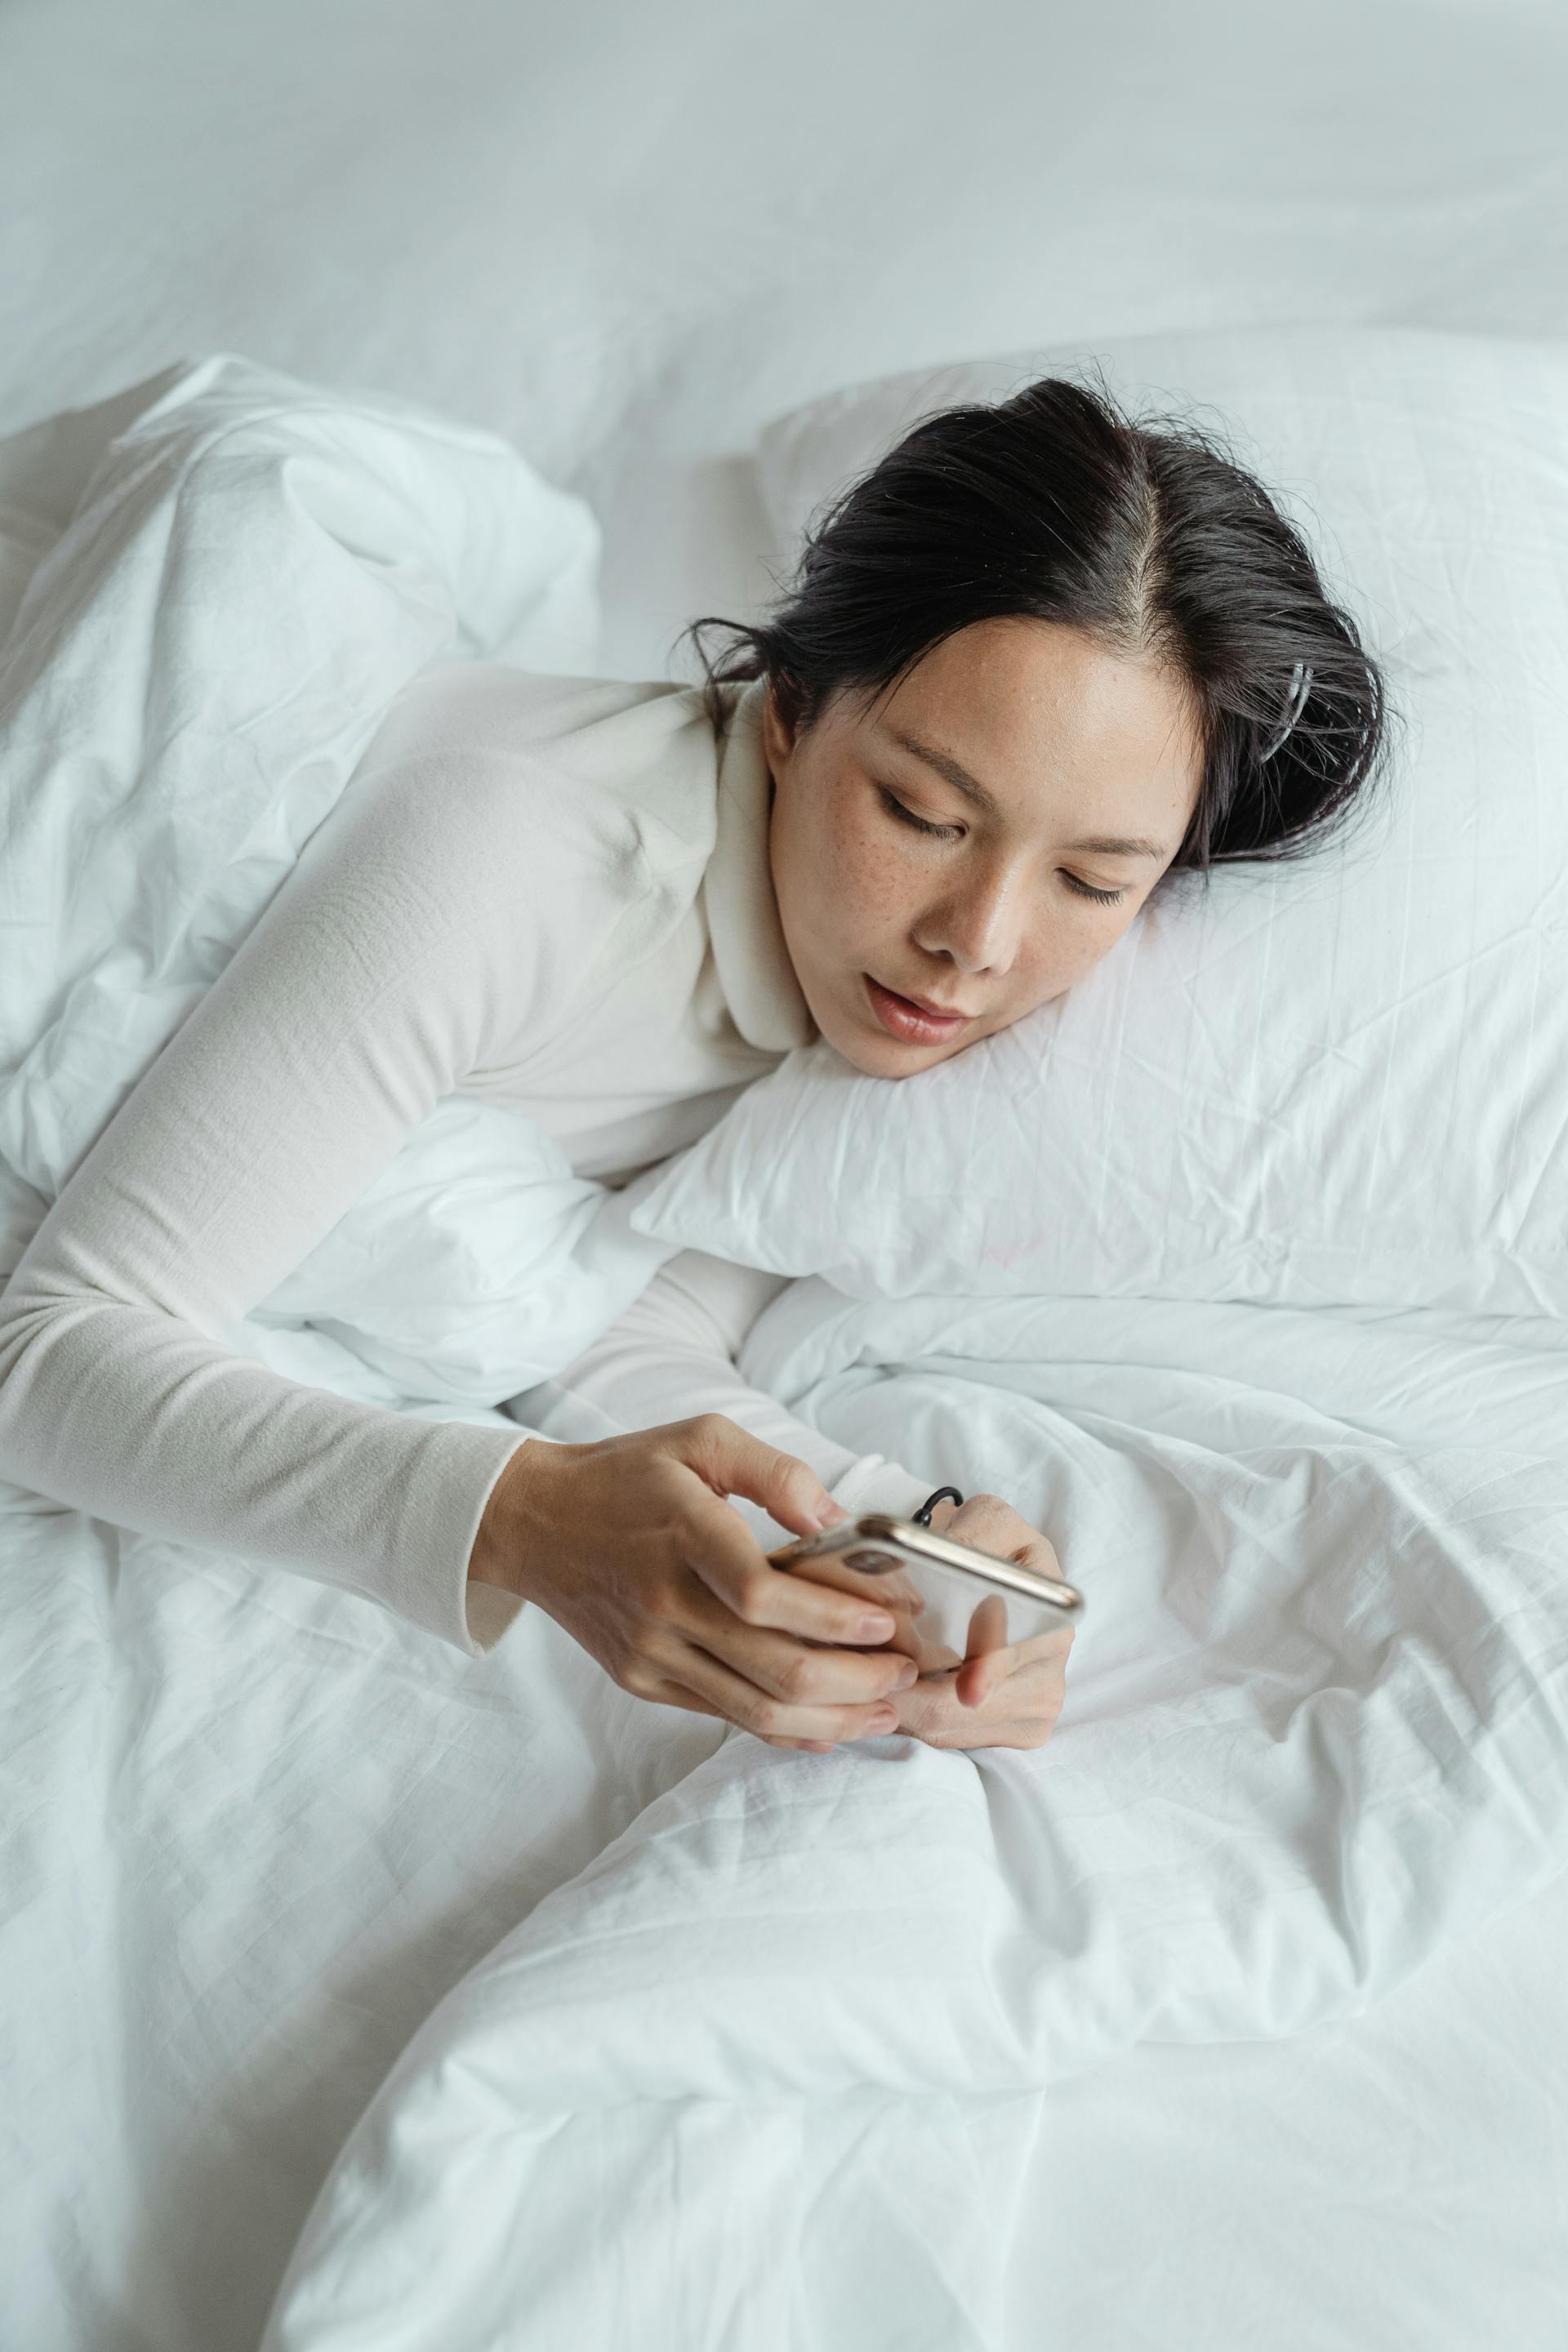 Une femme utilisant son téléphone au lit | Source : Pexels